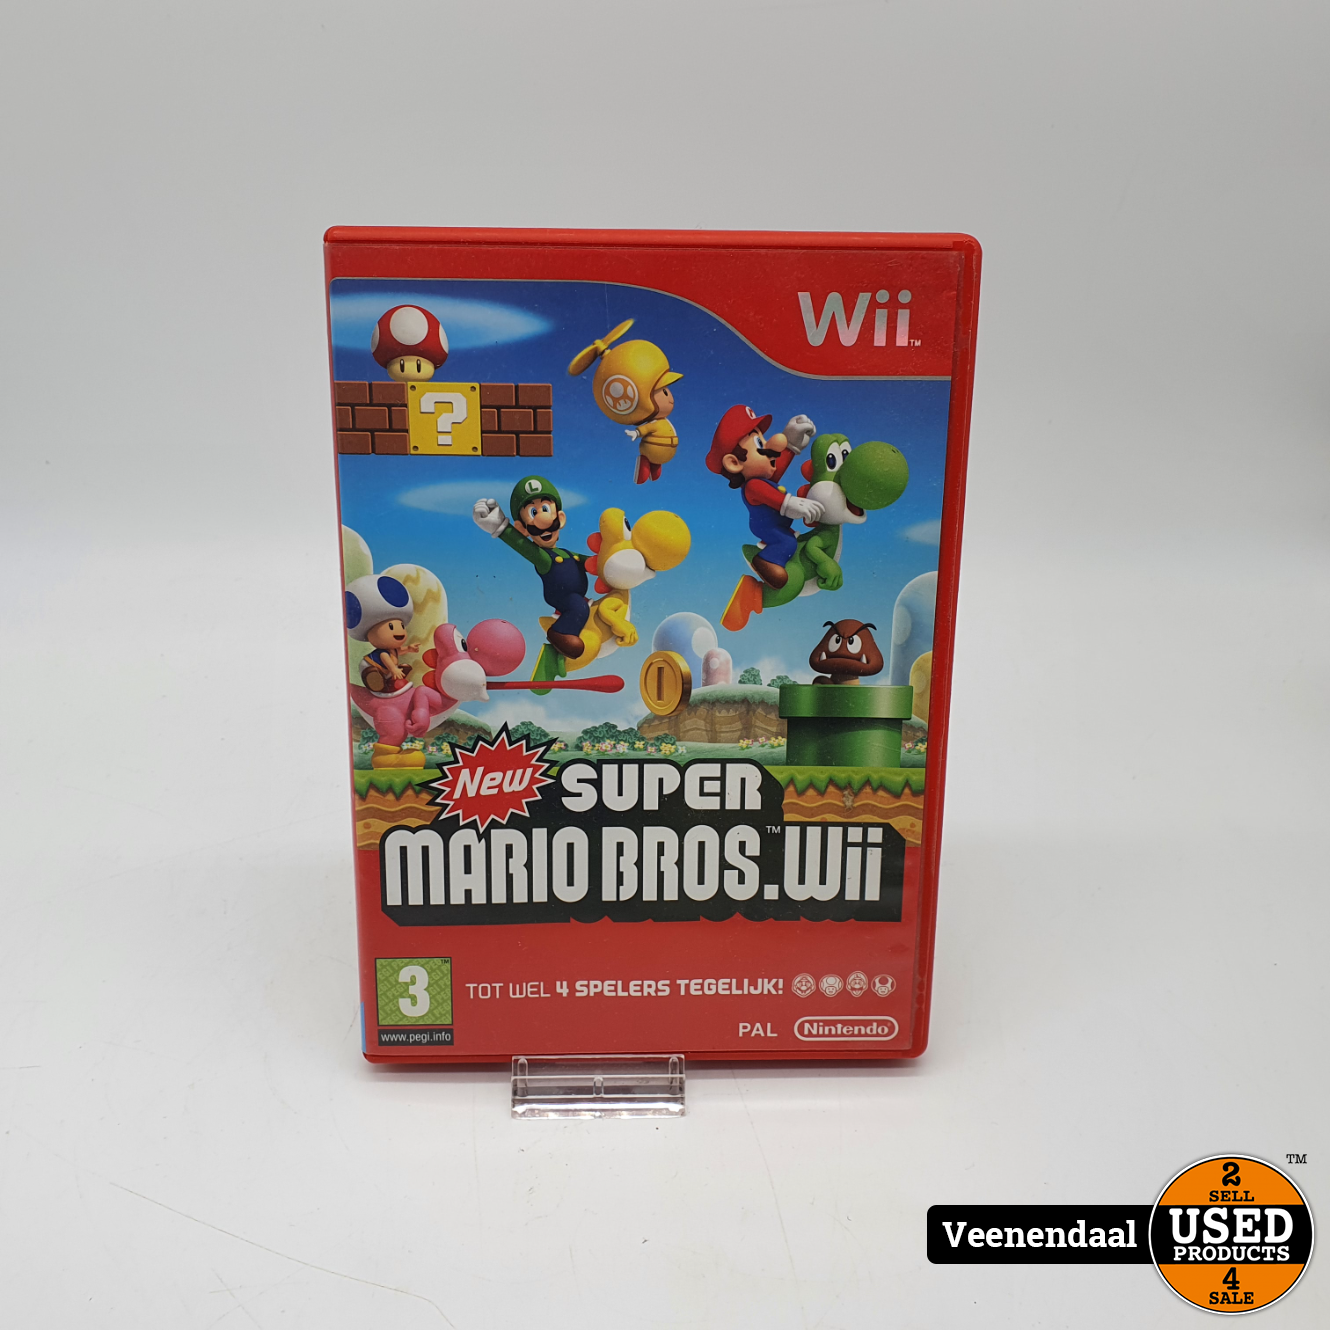 Verbergen Ingrijpen Huiswerk maken Wii Game: Super Mario Bros.Wii - Used Products Veenendaal